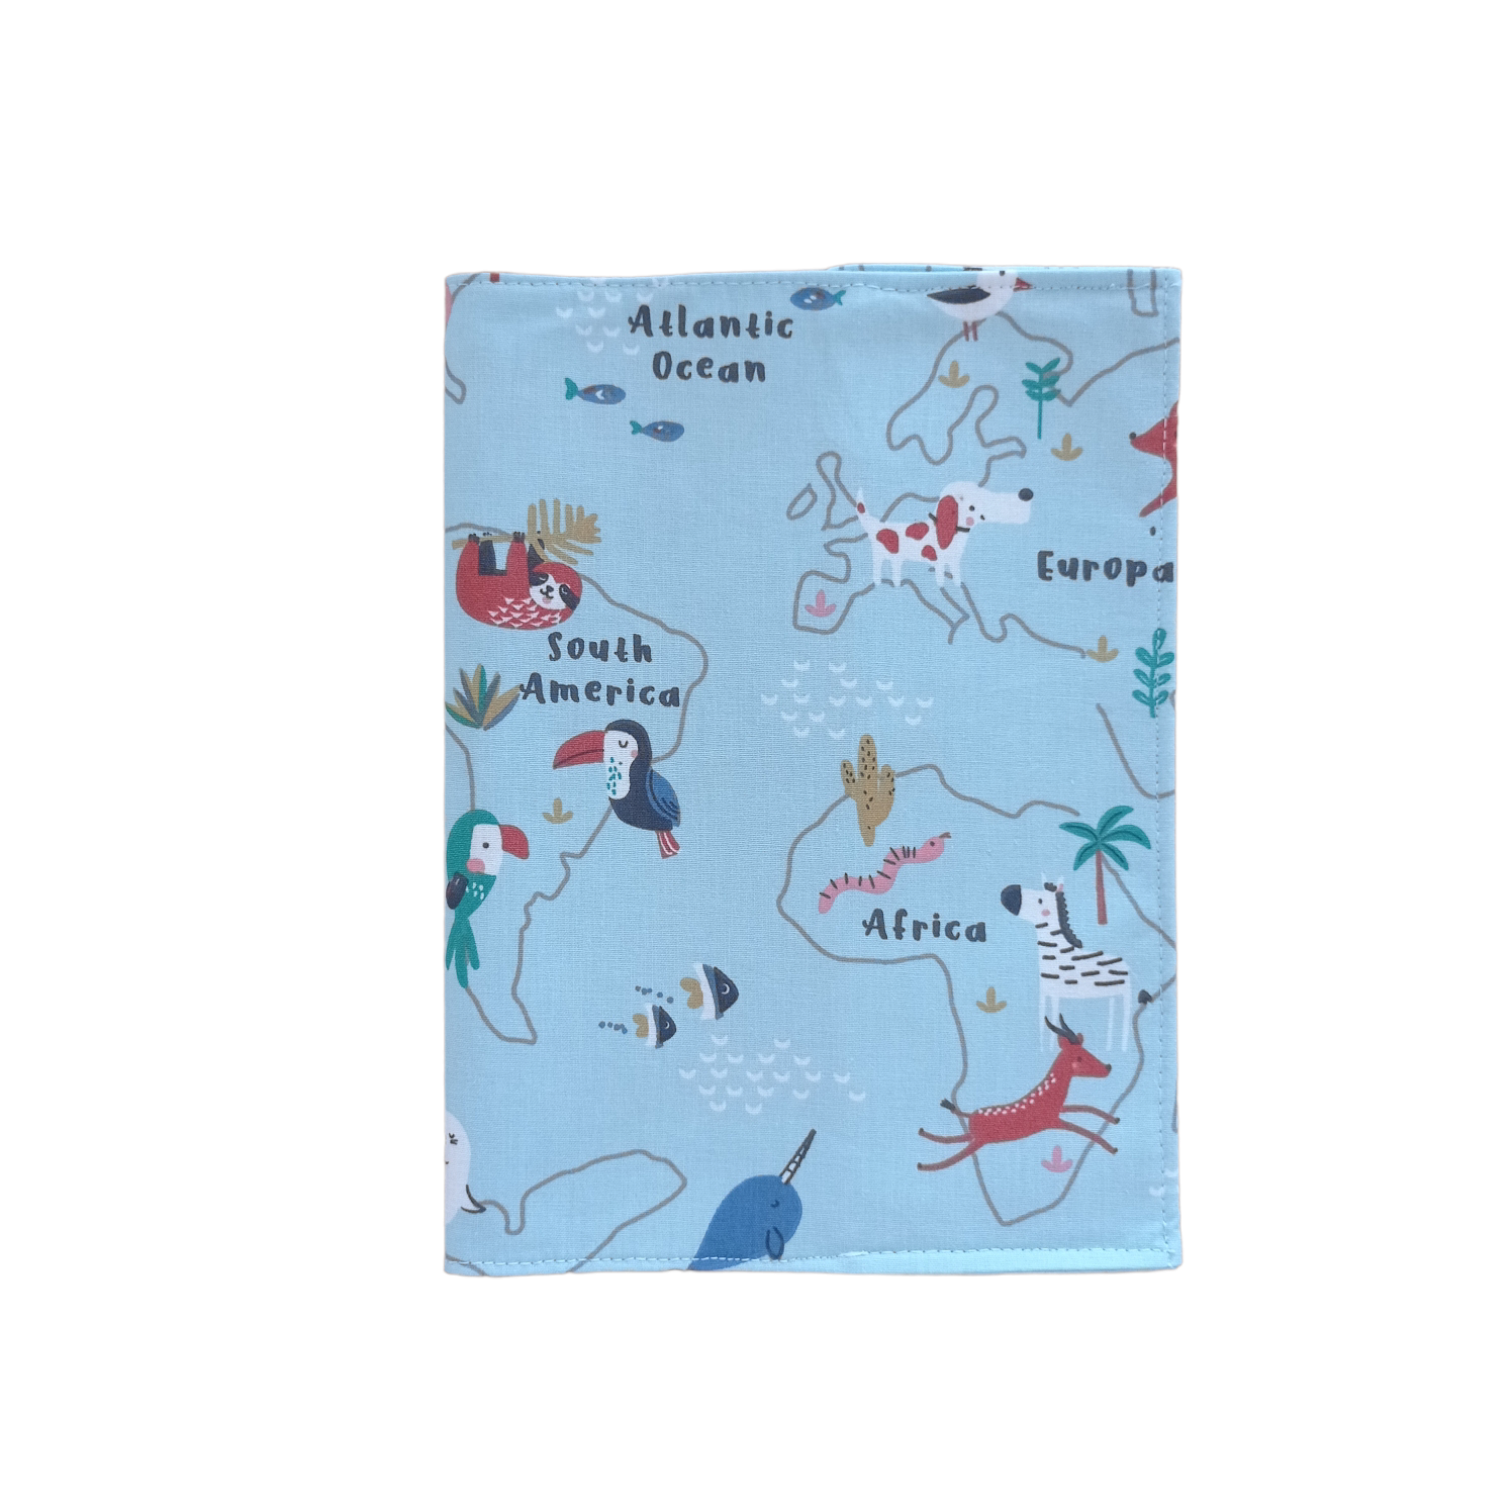 θήκη-βιβλιαρίου-υγείας-ζωάκια-σε-χάρτη